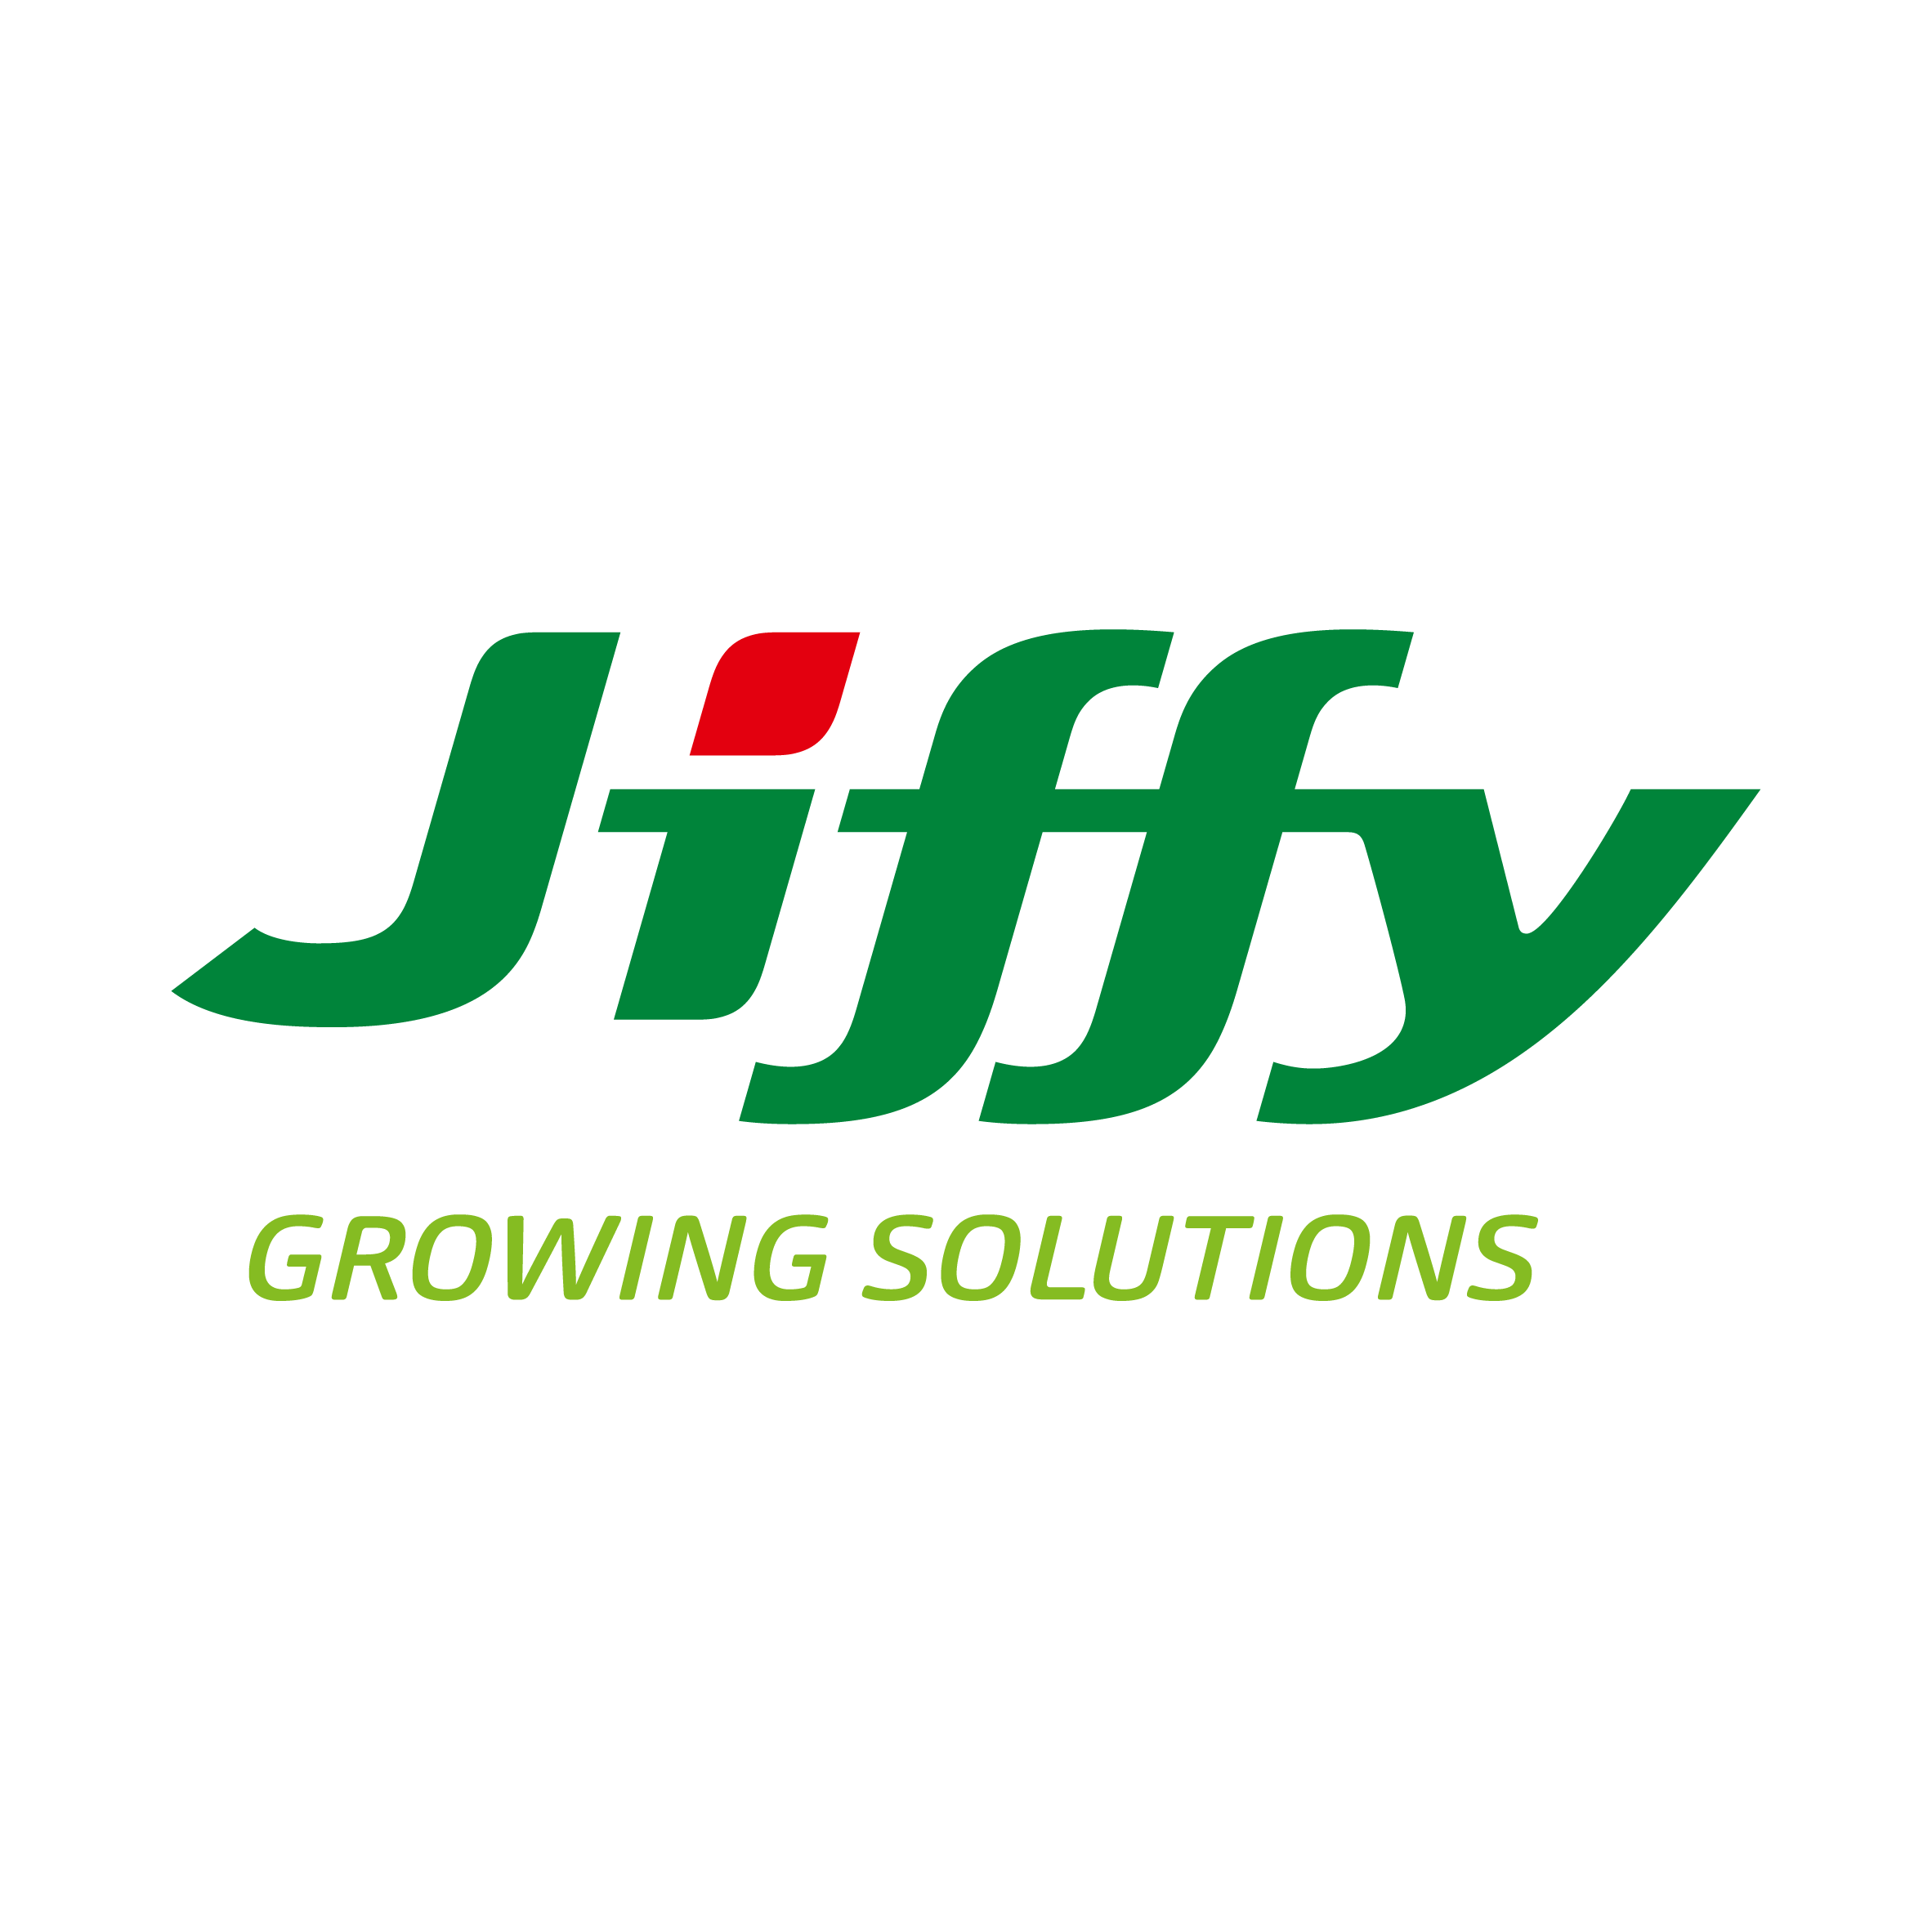 Productos Jiffy